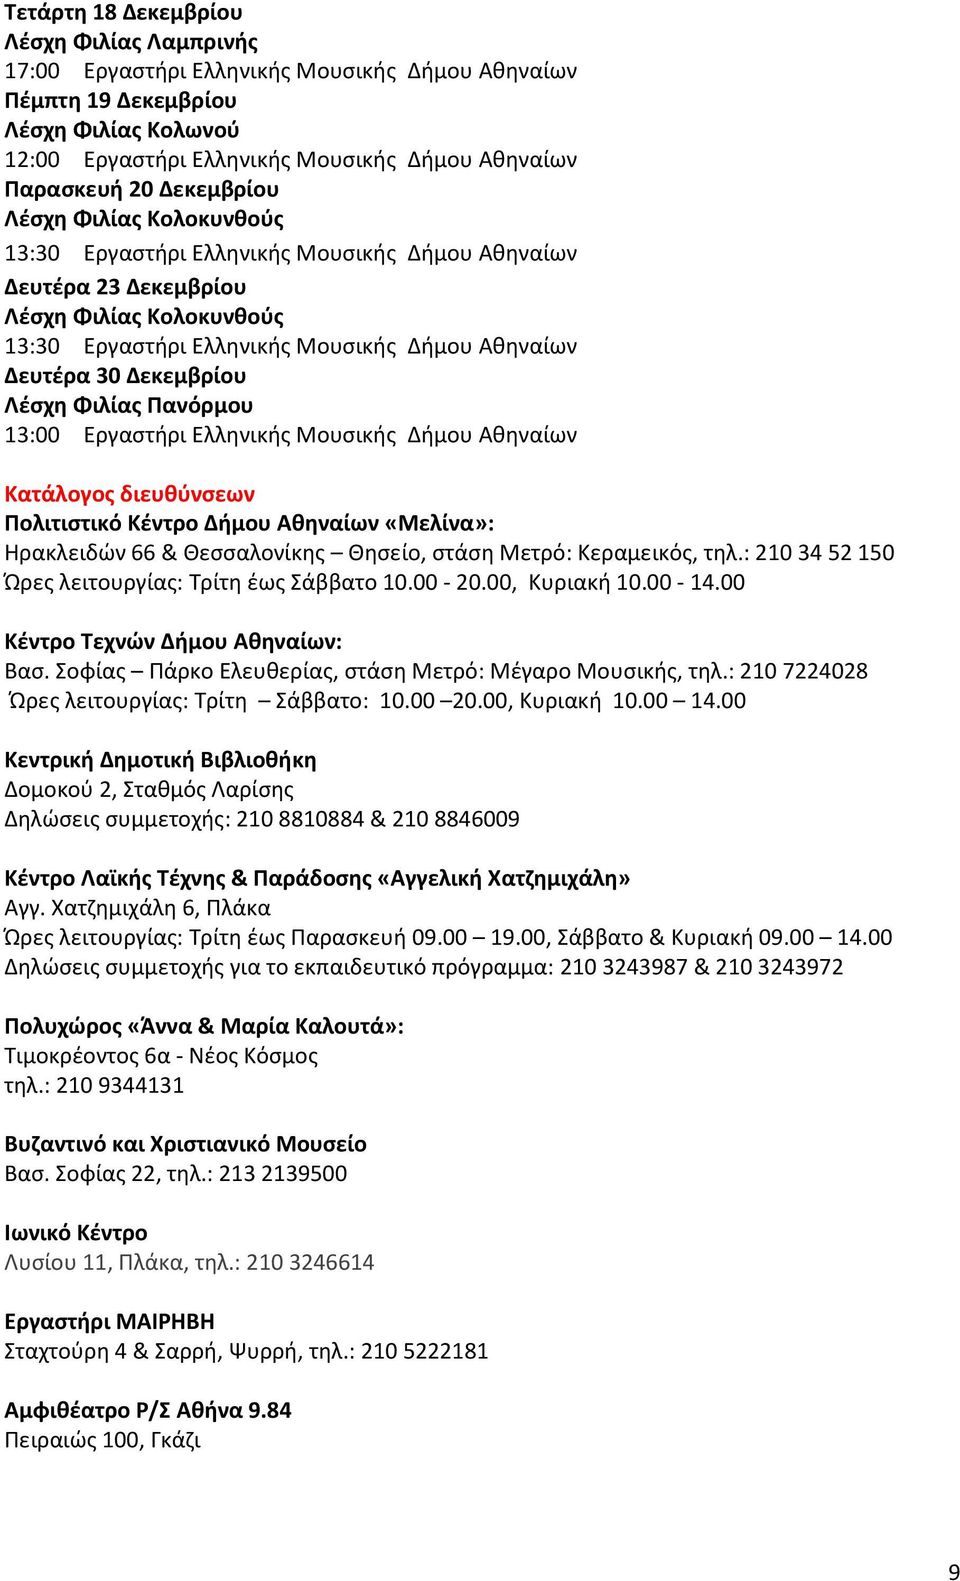 Δεκεμβρίου Λέσχη Φιλίας Πανόρμου 13:00 Εργαστήρι Ελληνικής Μουσικής Δήμου Αθηναίων Κατάλογος διευθύνσεων Πολιτιστικό Κέντρο Δήμου Αθηναίων «Μελίνα»: Ηρακλειδών 66 & Θεσσαλονίκης Θησείο, στάση Μετρό: